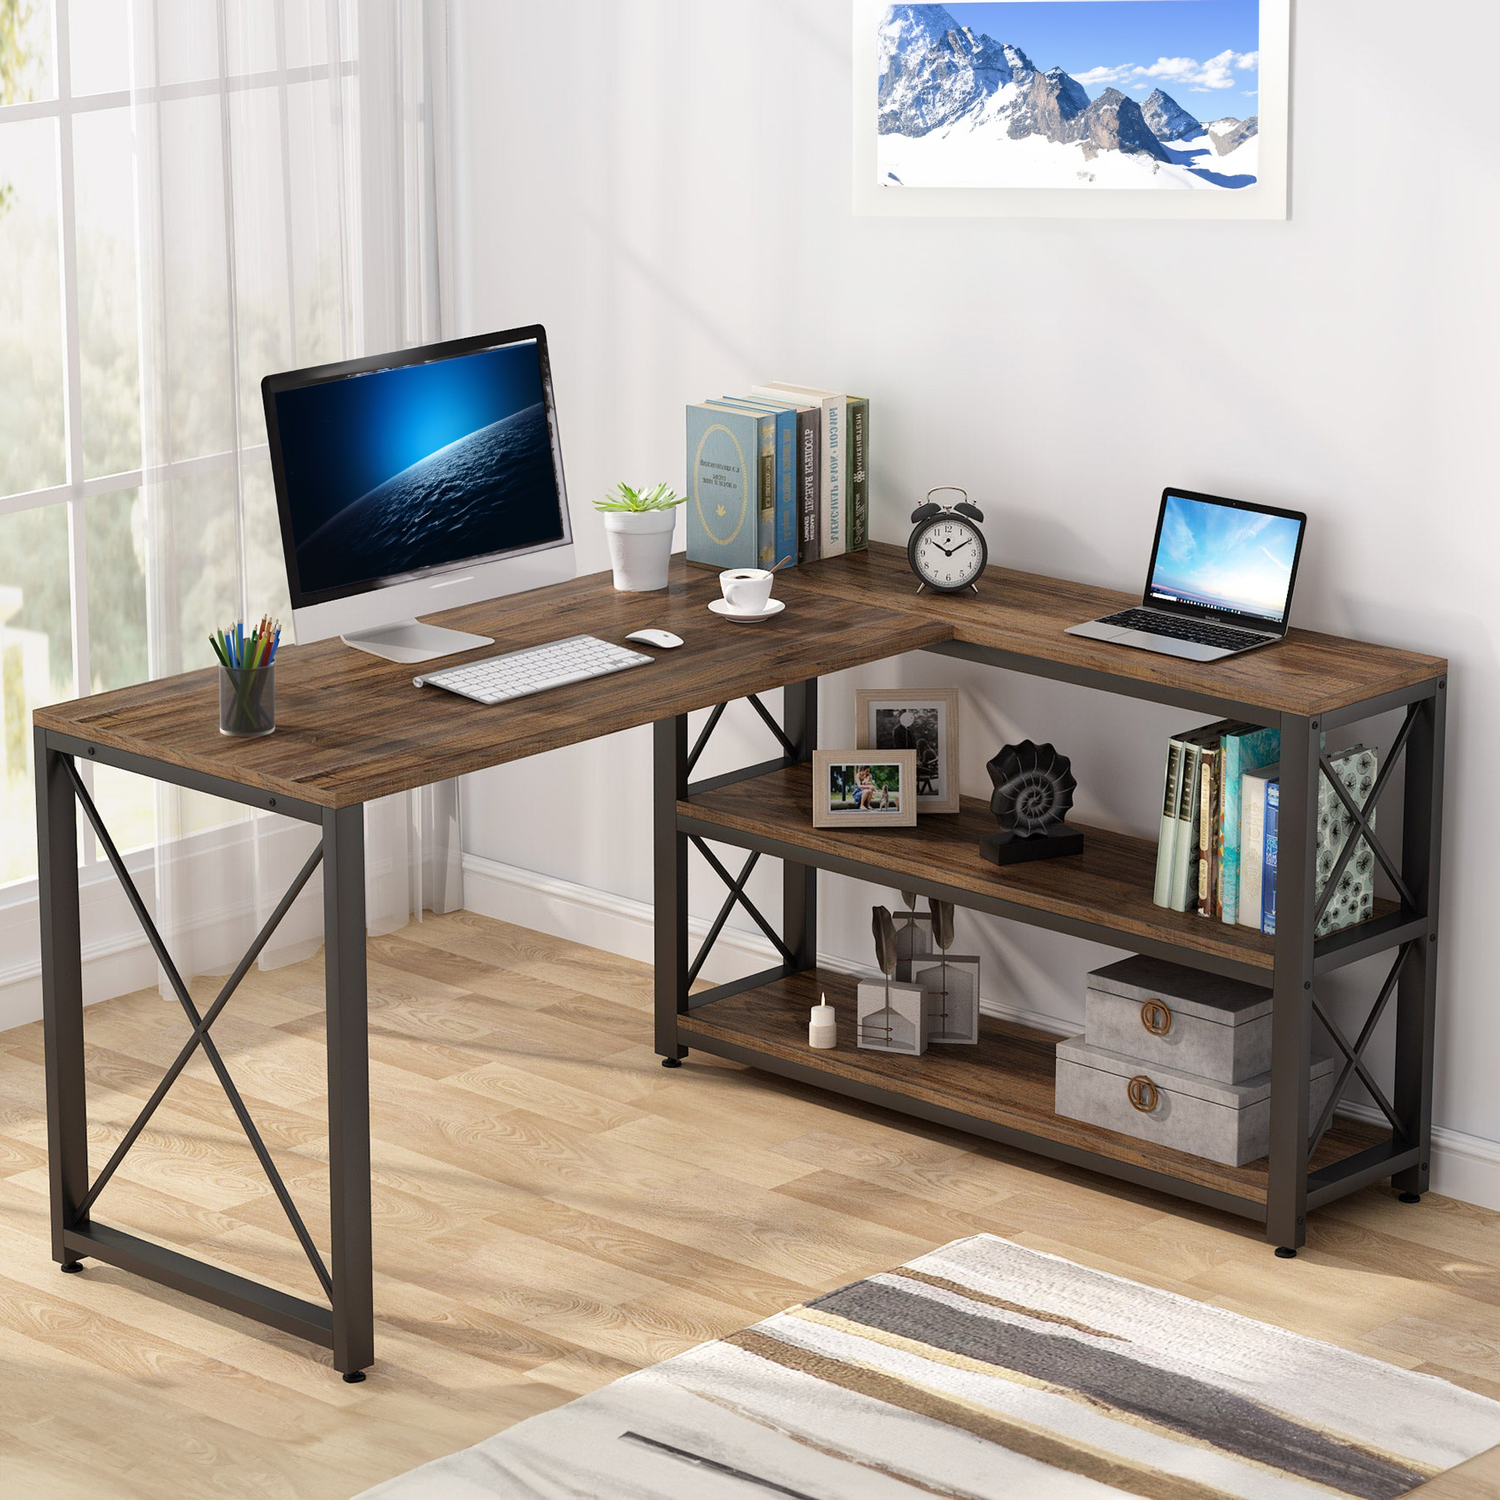 Schreibtisch, Computertisch, Eckschreibtisch, Schreibtische, Eck Schreibtisch, Computer Tisch, L Tisch